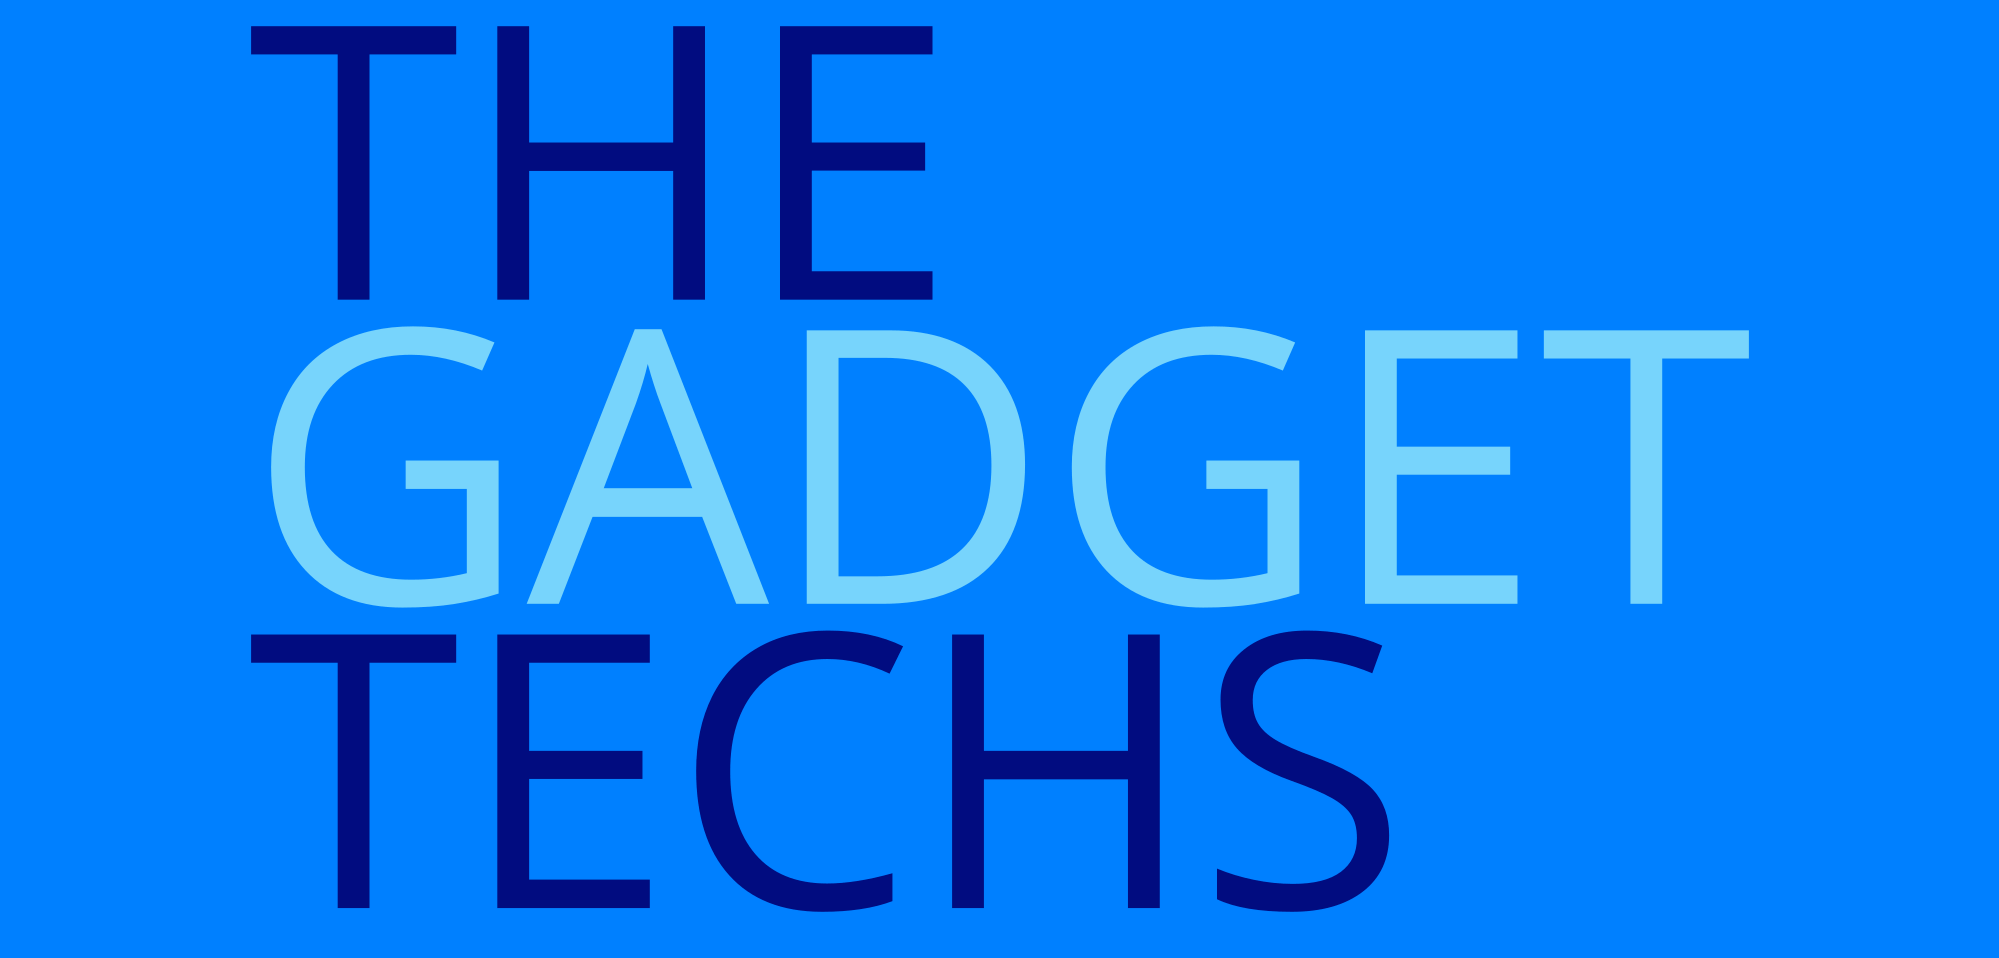 The Gadget Techs